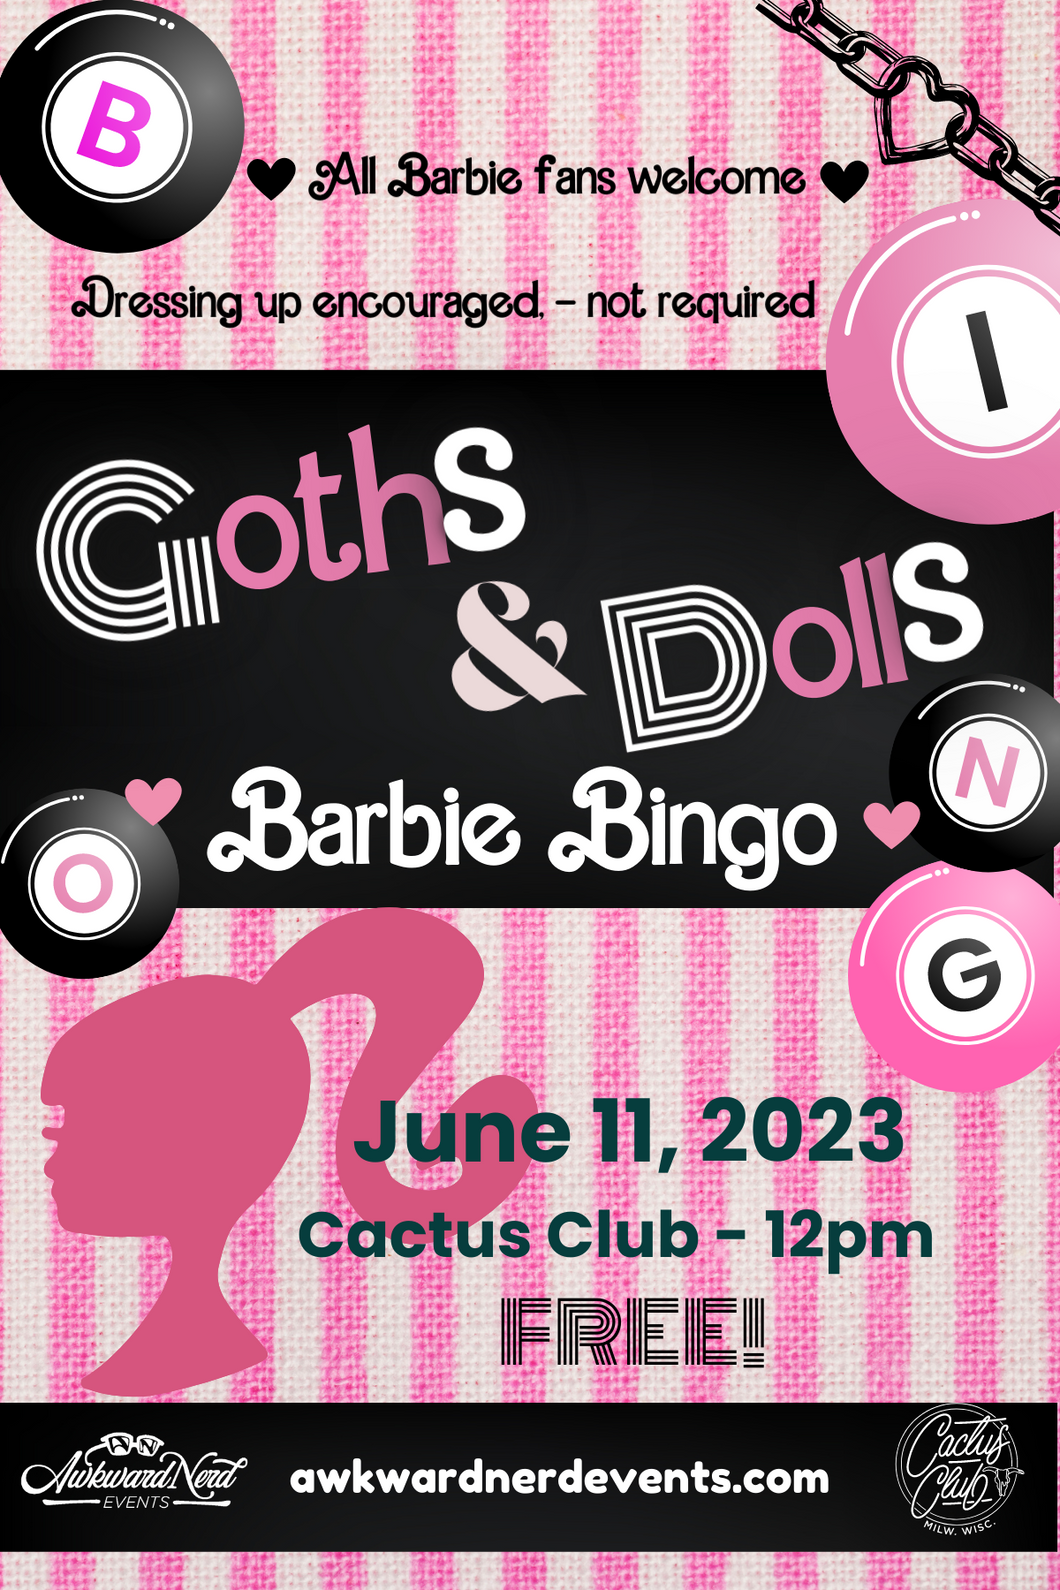 Goths & Dolls - A Barbie Bingo Event!